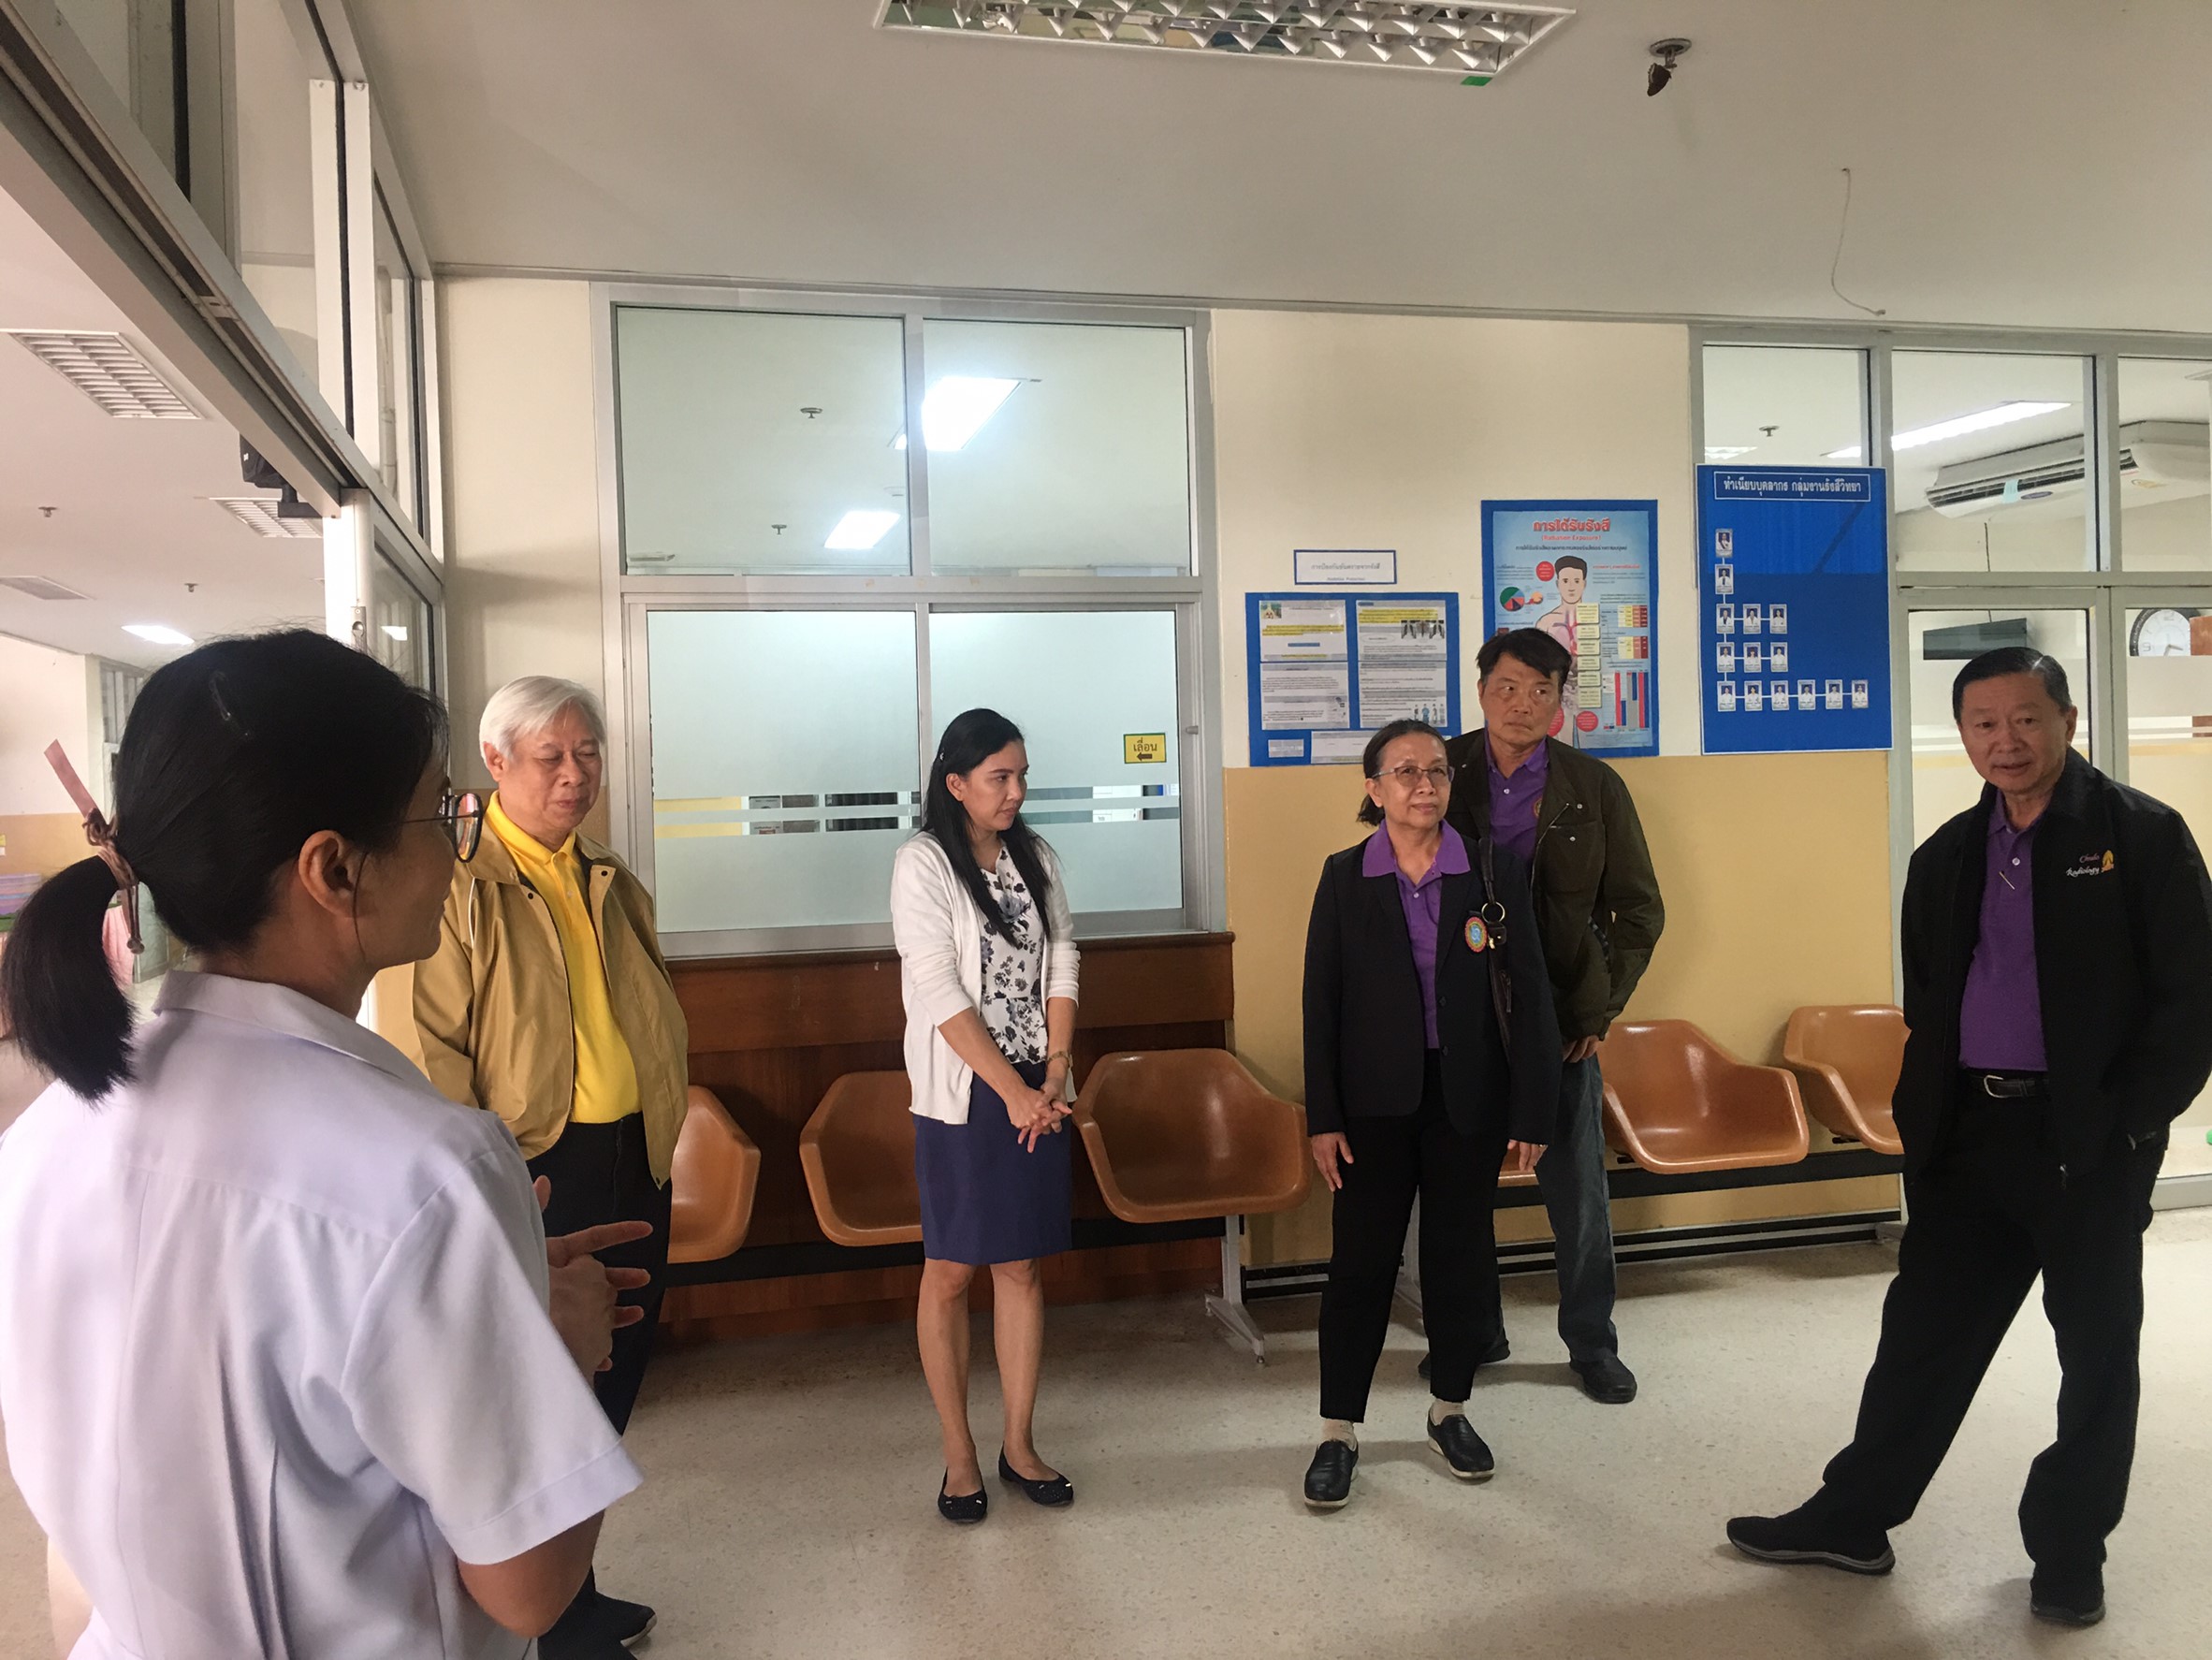 ประชุมวิชาการร่วมกับรังสีการแพทย์แห่งประเทศไทย ครั้งที่17 27-29 พ.ย. - พร้อมเข้าเยี่ยมและให้กำลังใจหน่วยงานรังสีวิทยาในพื้นที่จังหวัดอุบลราชธานีระหว่างวันที่ 25-26 พฤศจิกายน 2562 68